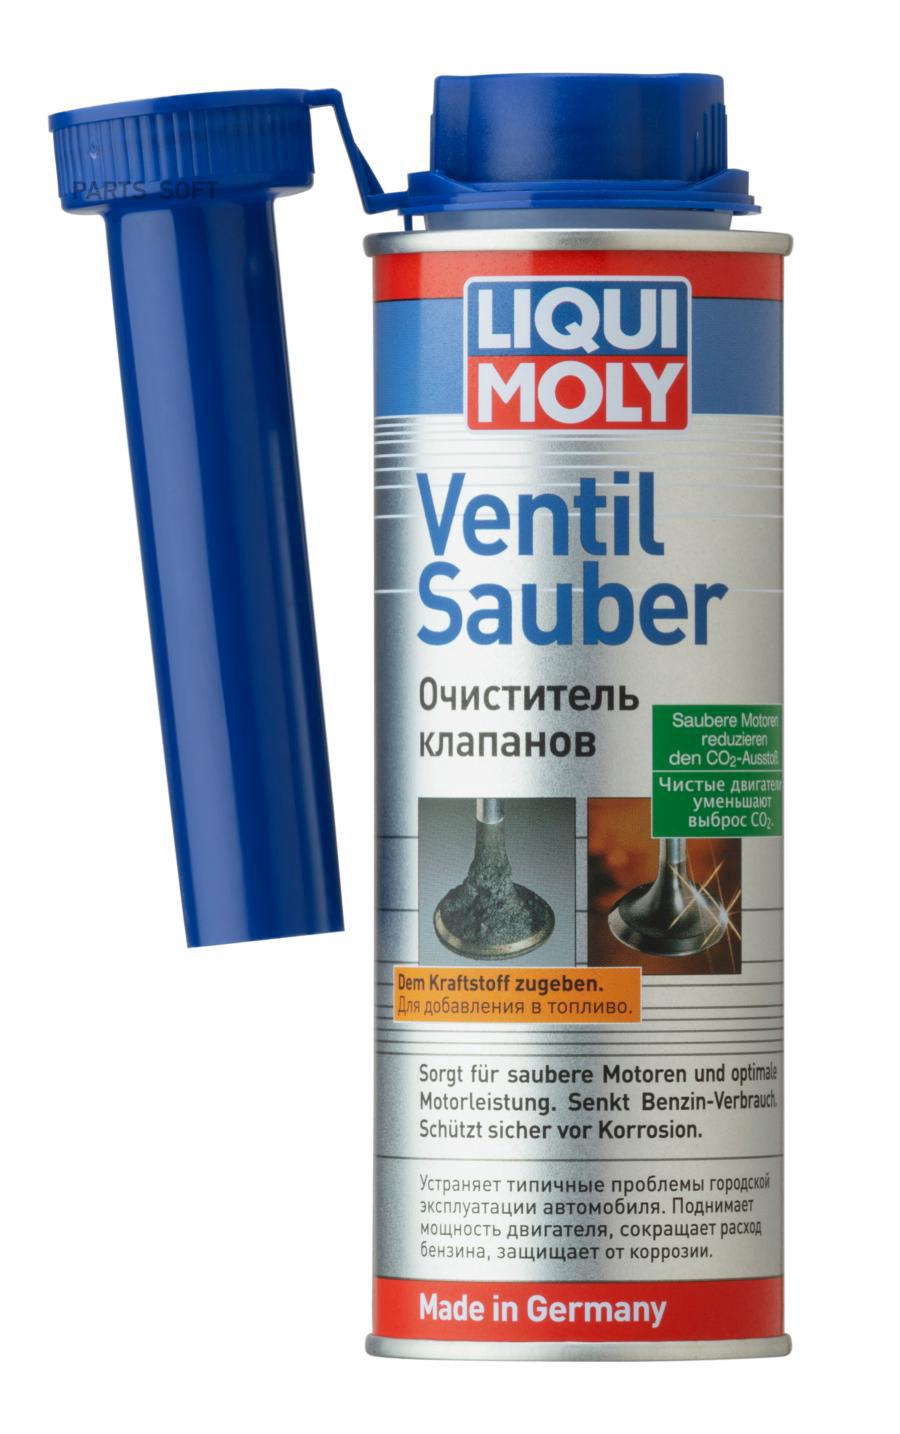 Очиститель клапанов Ventil Sauber (0,25л)